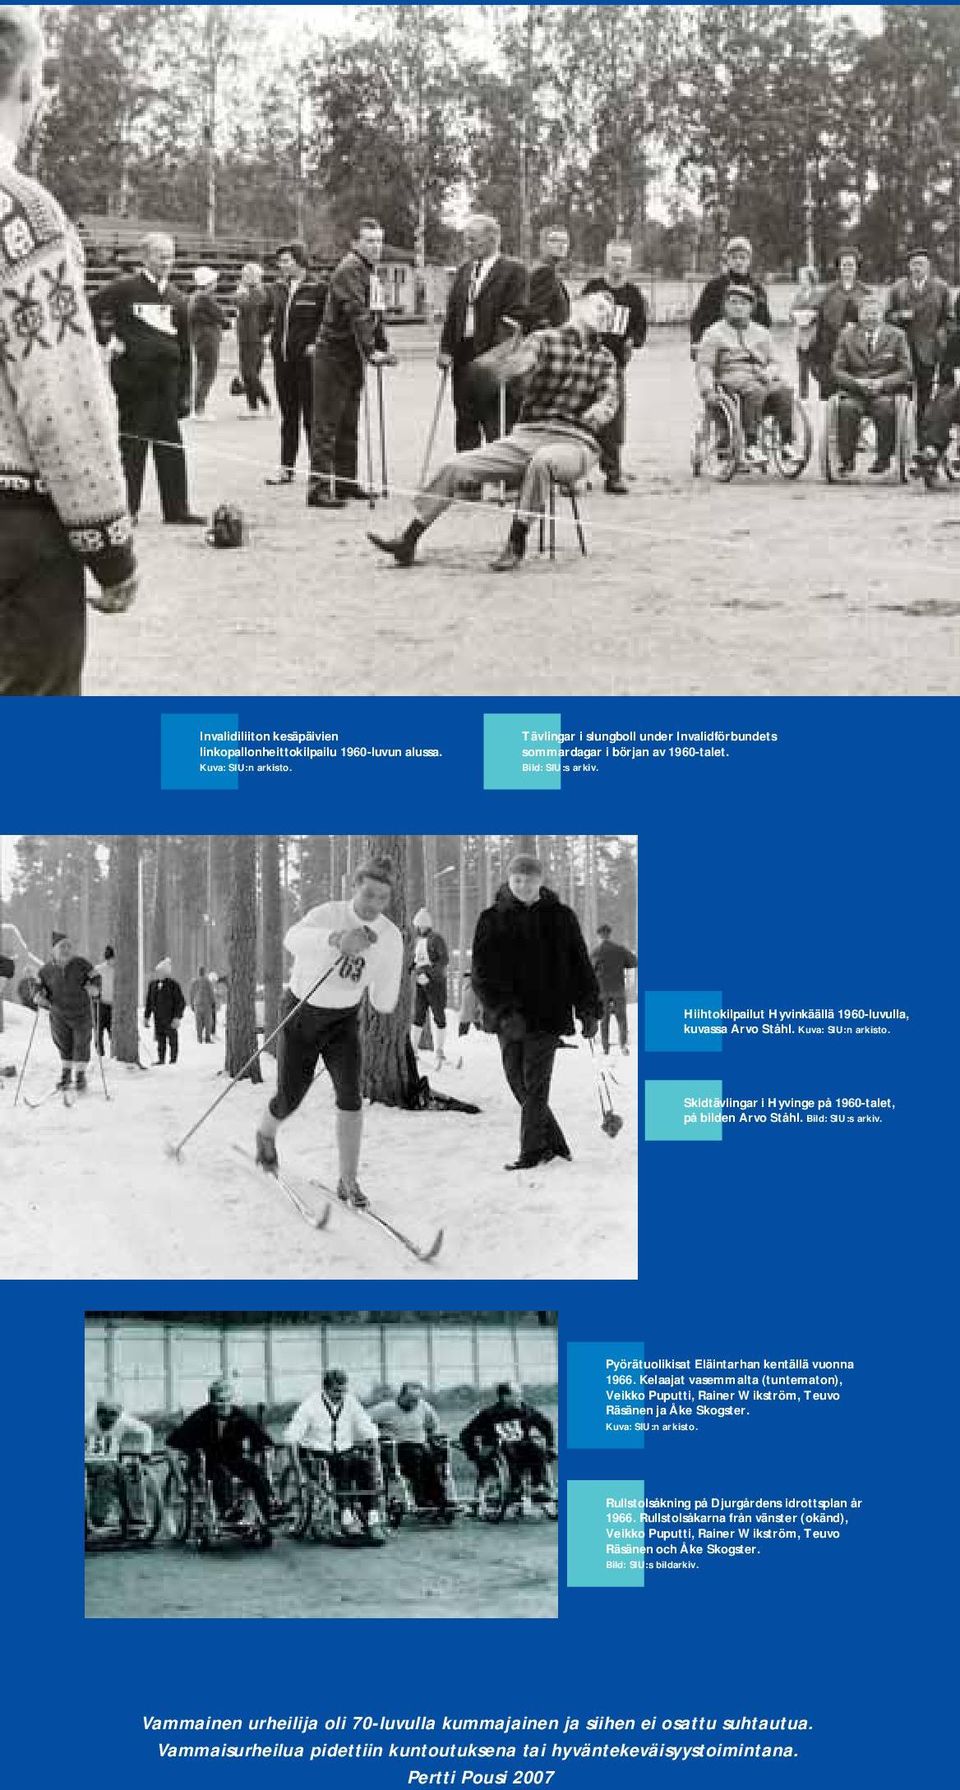 Pyörätuolikisat Eläintarhan kentällä vuonna 1966. Kelaajat vasemmalta (tuntematon), Veikko Puputti, Rainer Wikström, Teuvo Räsänen ja Åke Skogster. Kuva: SIU:n arkisto.